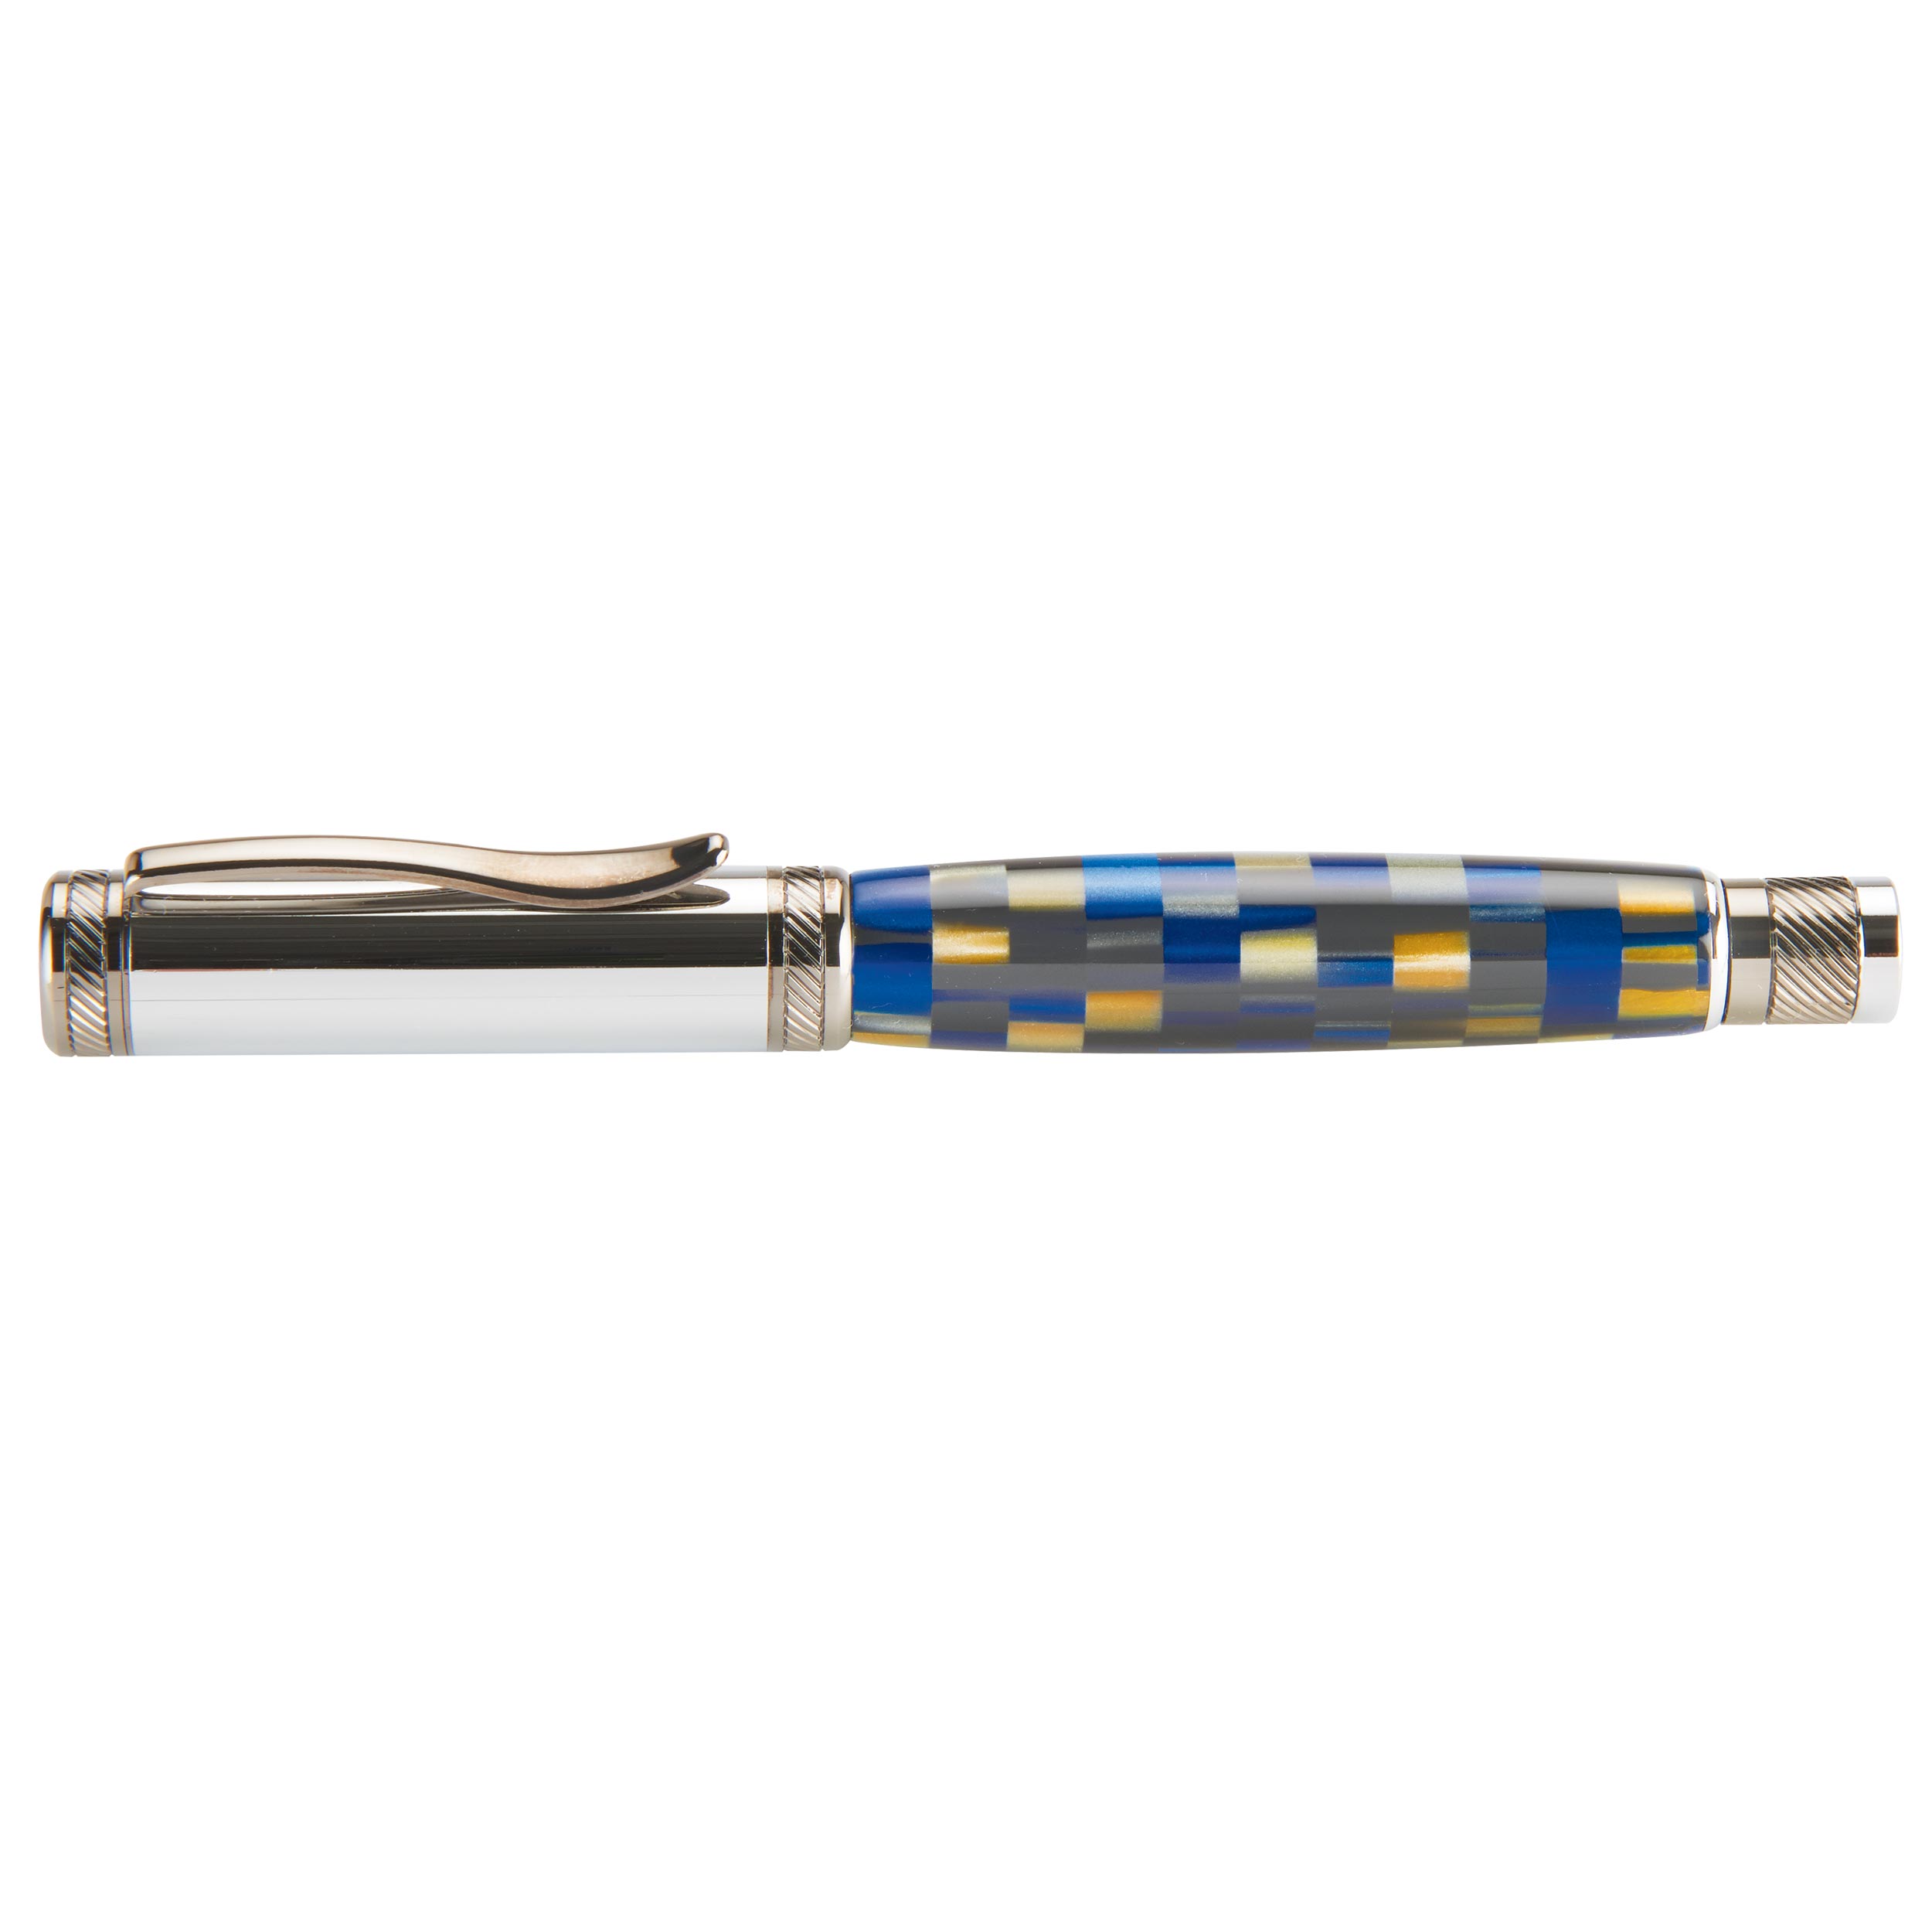 Attraction Magnetic Rollerball Pen Kit - Chrome & Gunmetal